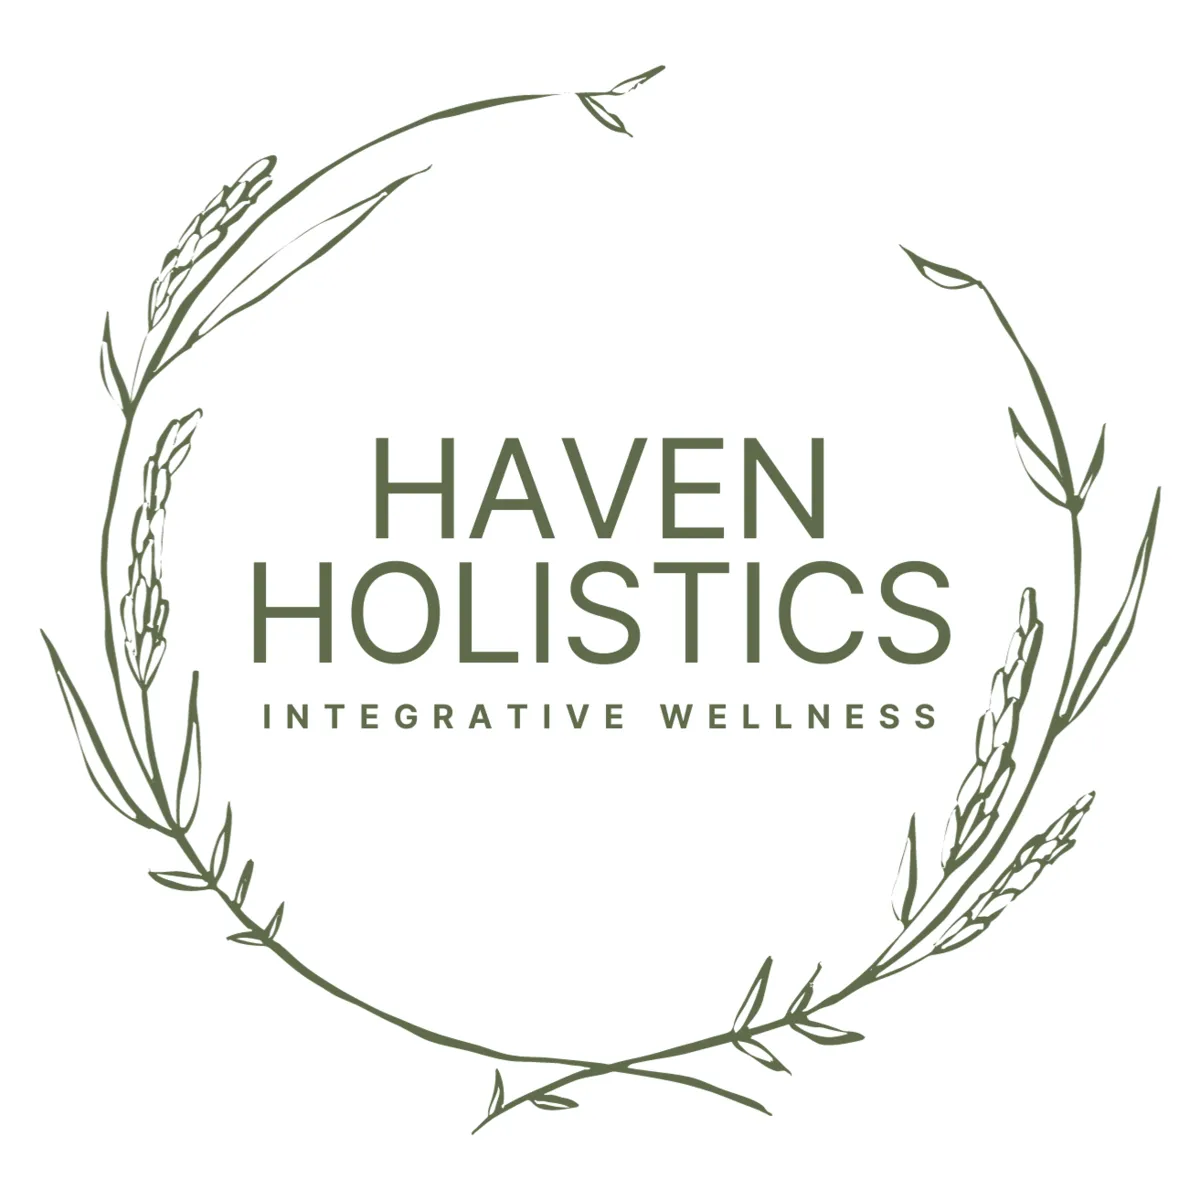 Haven Holistics Integrative Wellness